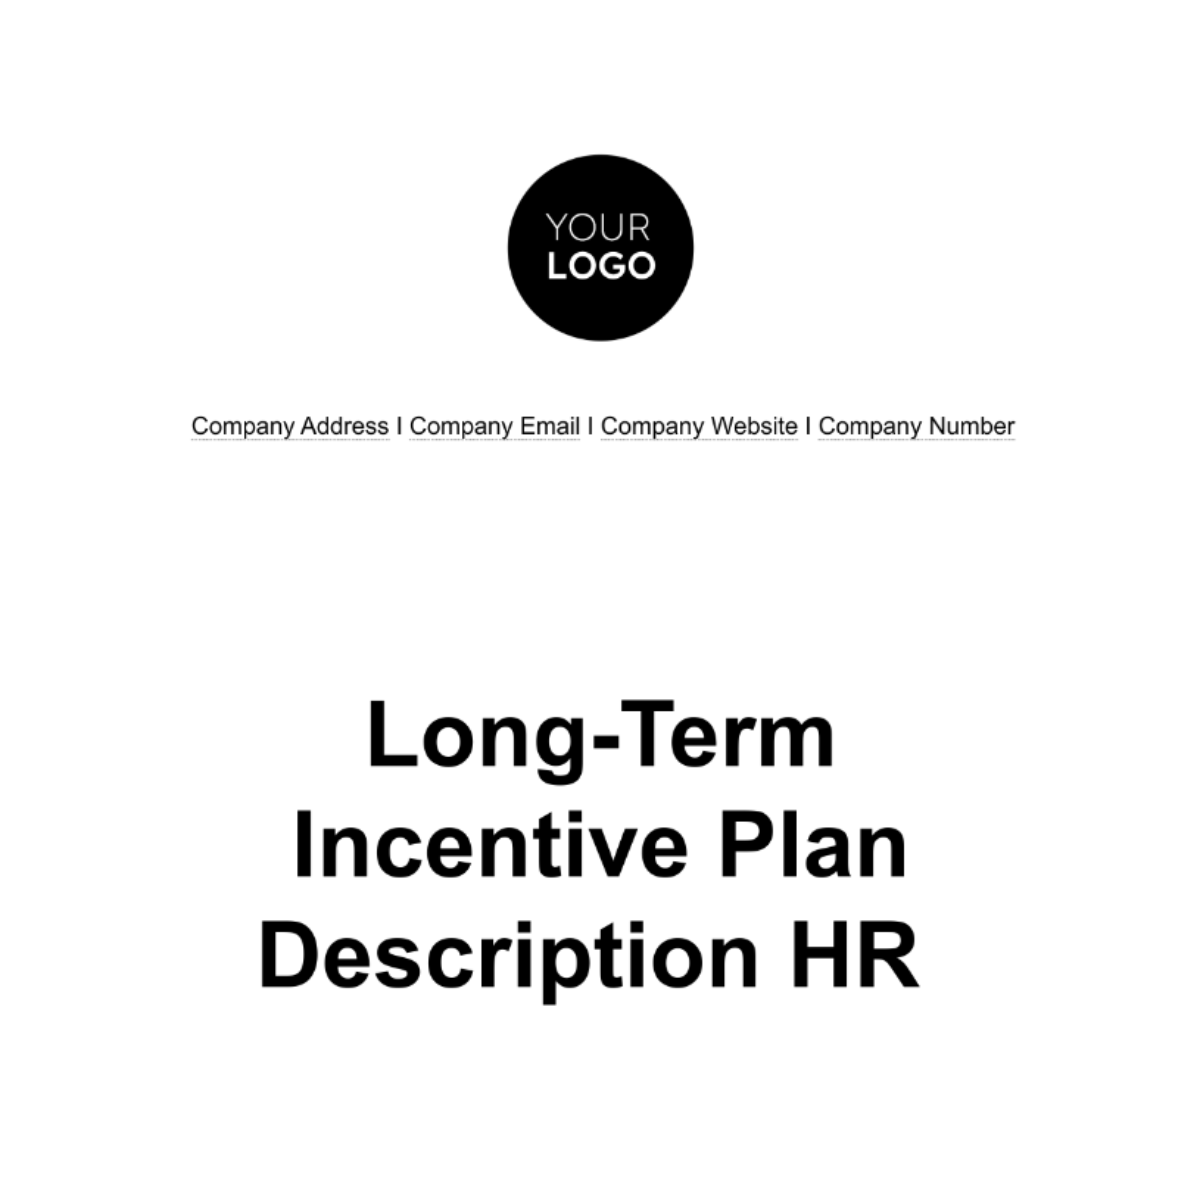 Long-Term Incentive Plan Description HR Template